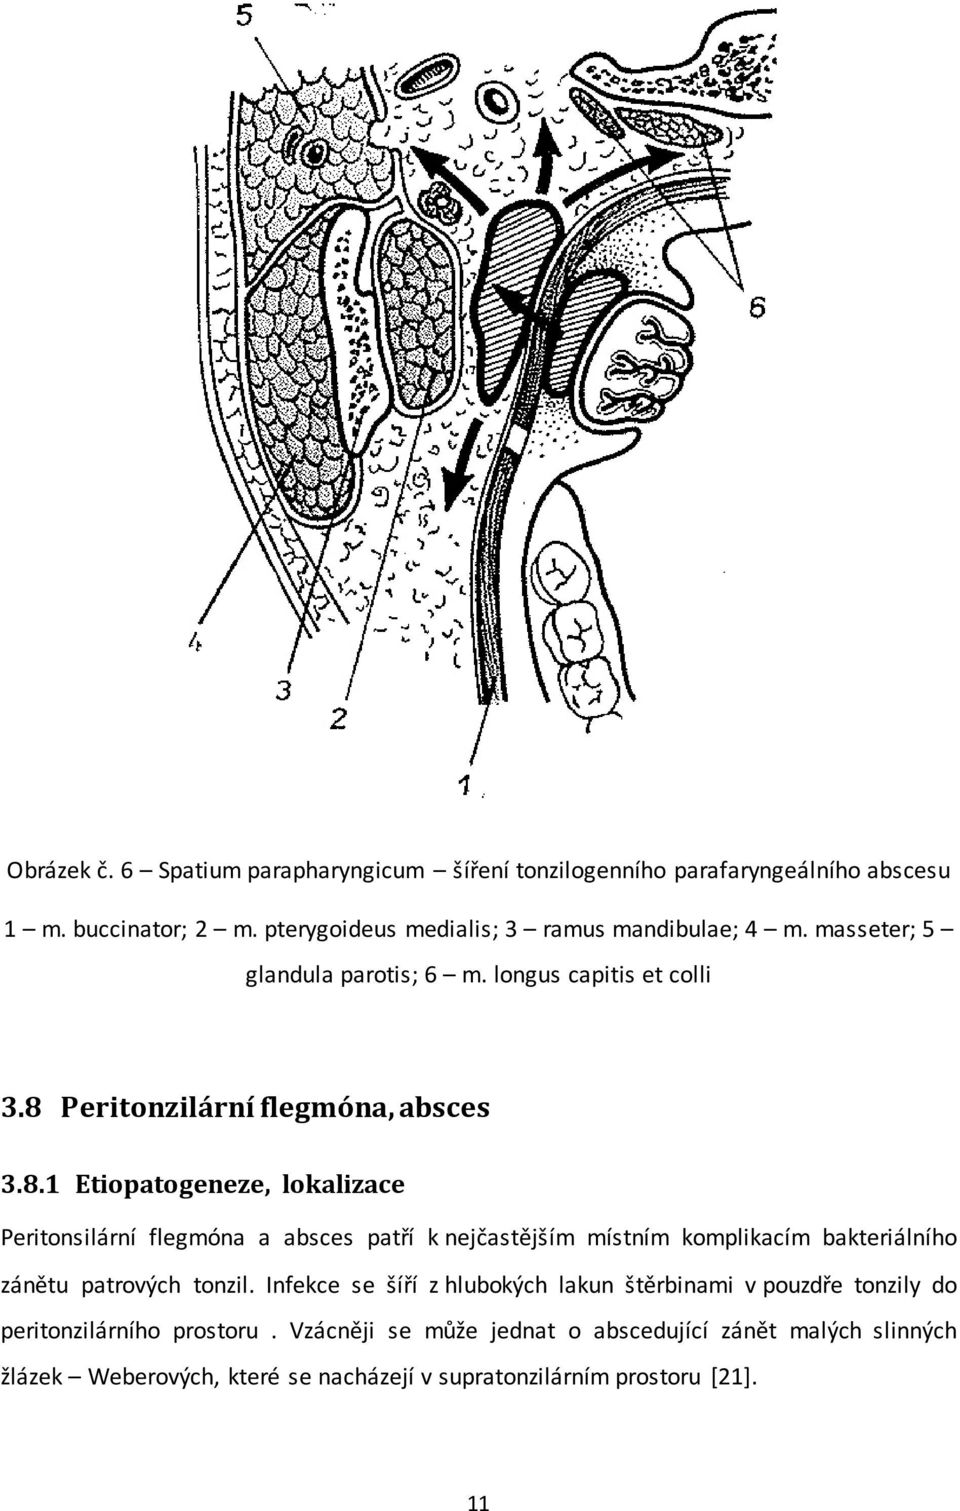 Peritonzilární flegmóna, absces 3.8.